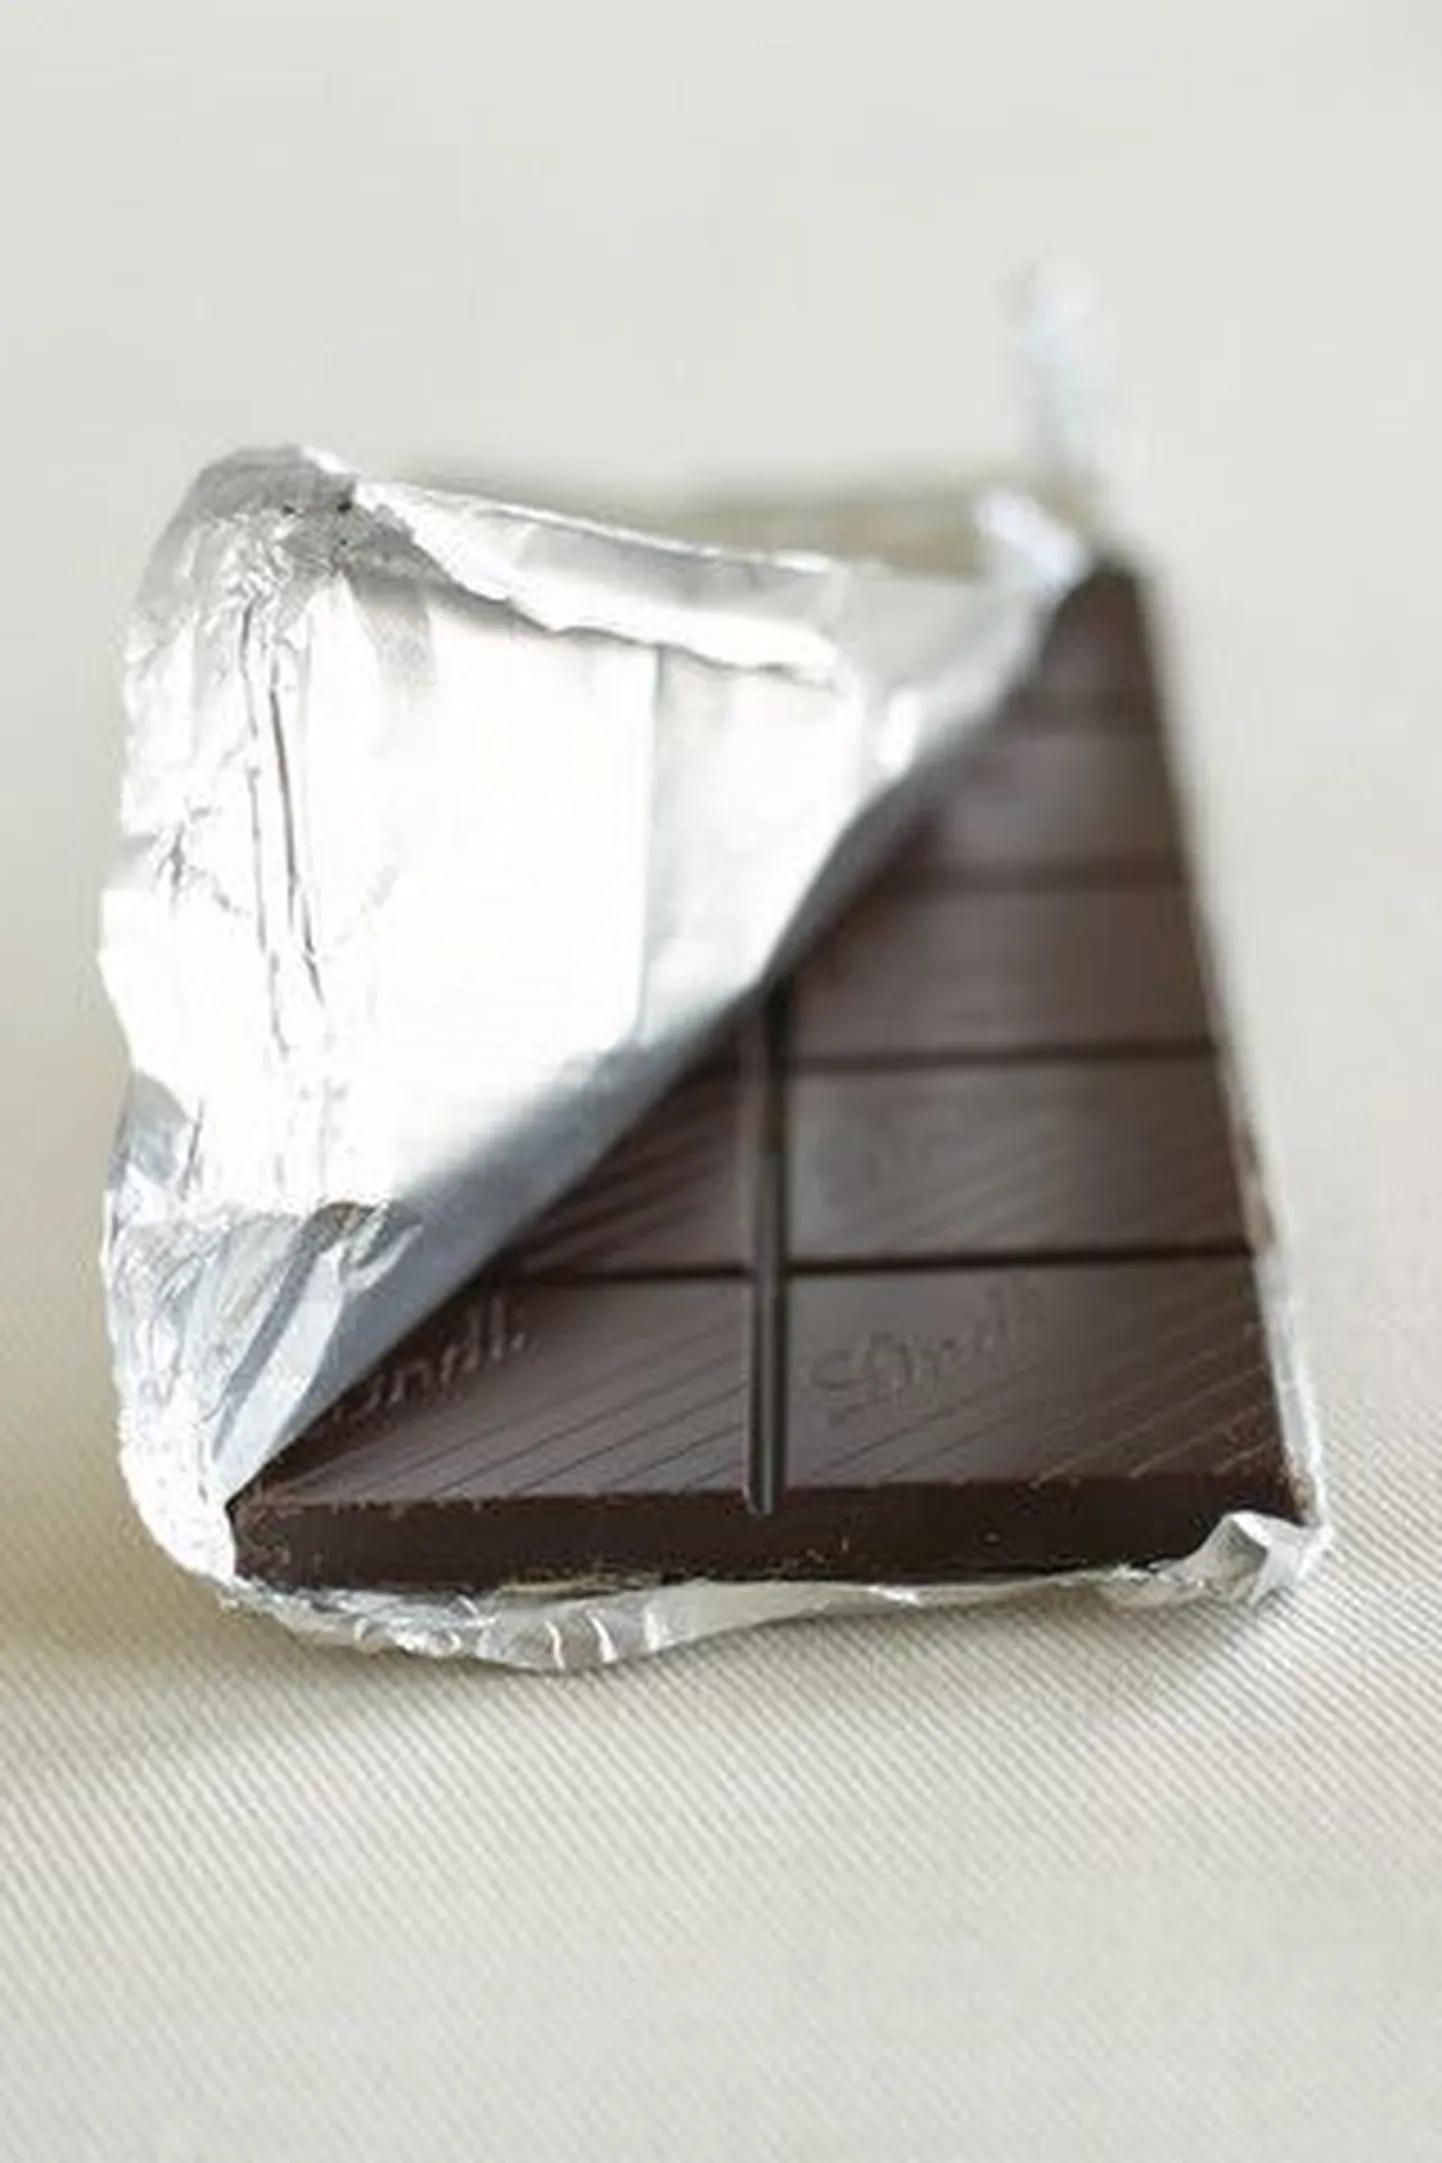 Kahe saarlase jaoks lõppes šokolaadi ostmine politseis.